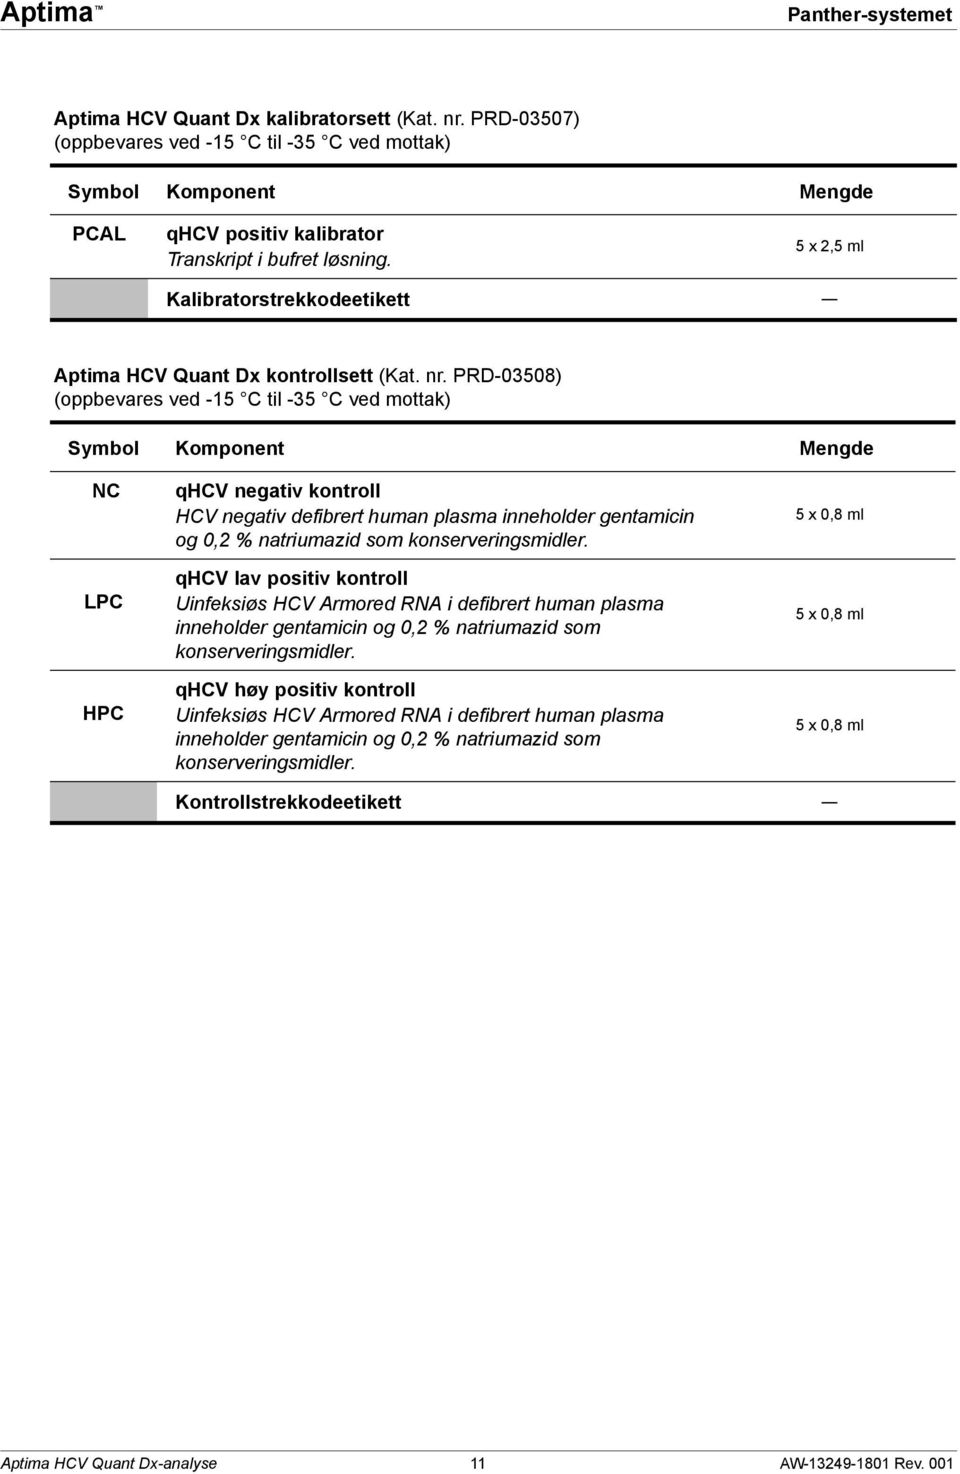 PRD-03508) (oppbevares ved -15 C til -35 C ved mottak) Symbol Komponent Mengde NC LPC HPC qhcv negativ kontroll HCV negativ defibrert human plasma inneholder gentamicin og 0,2 % natriumazid som